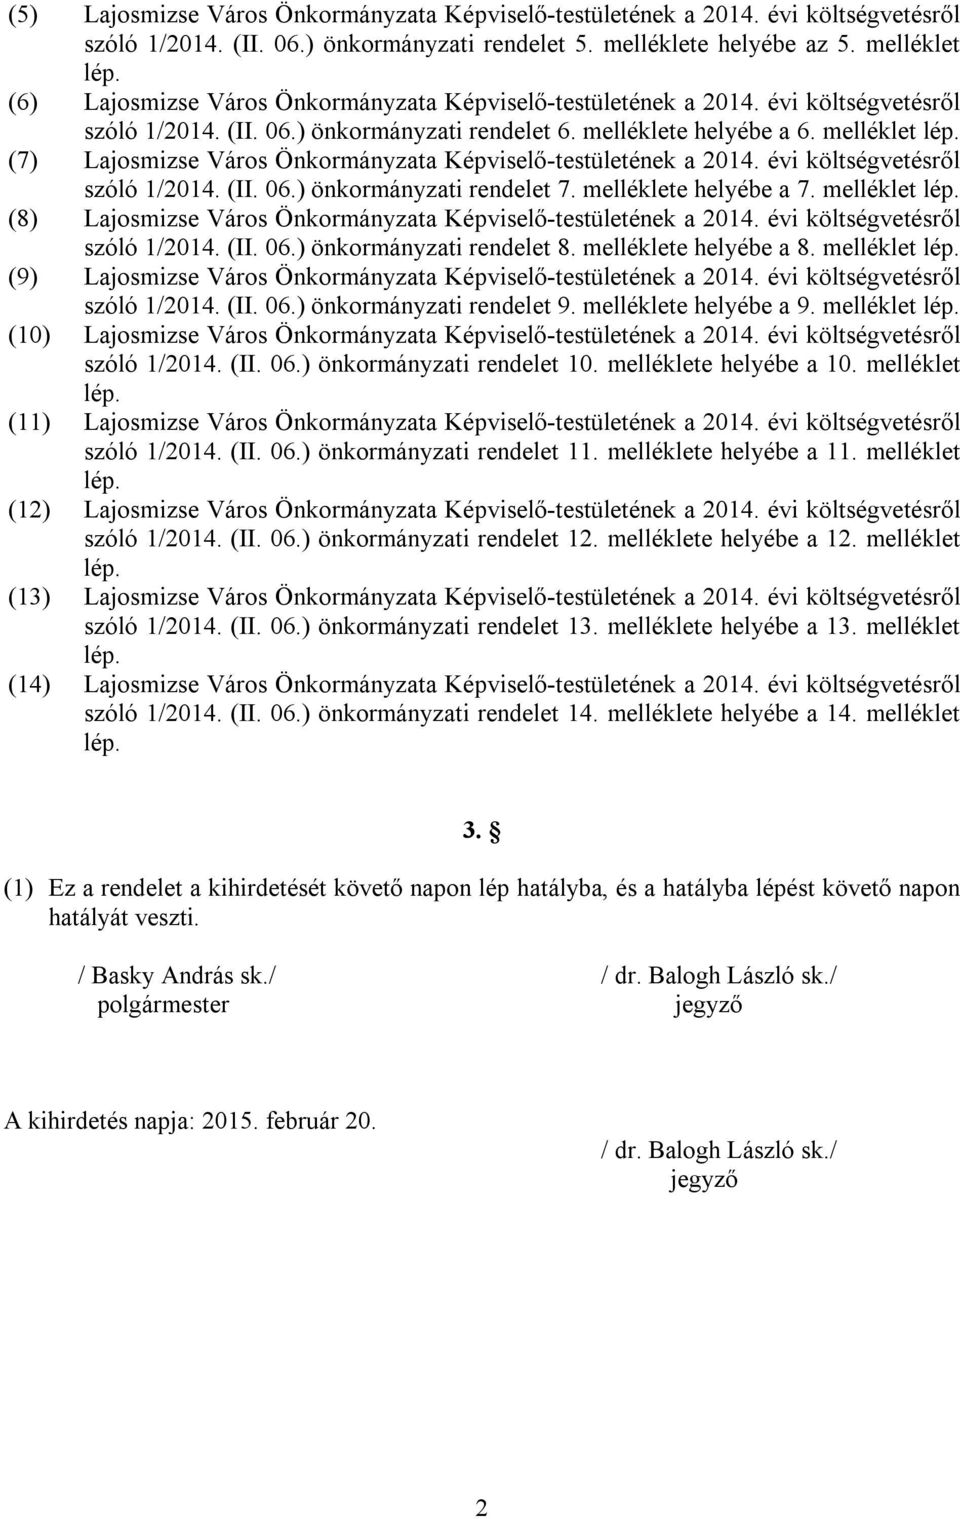 (7) Lajosmizse Város Önkormányzata Képviselő-testületének a 2014. évi költségvetésről szóló 1/2014. (II. 06.) önkormányzati rendelet 7. melléklete helyébe a 7. melléklet lép.